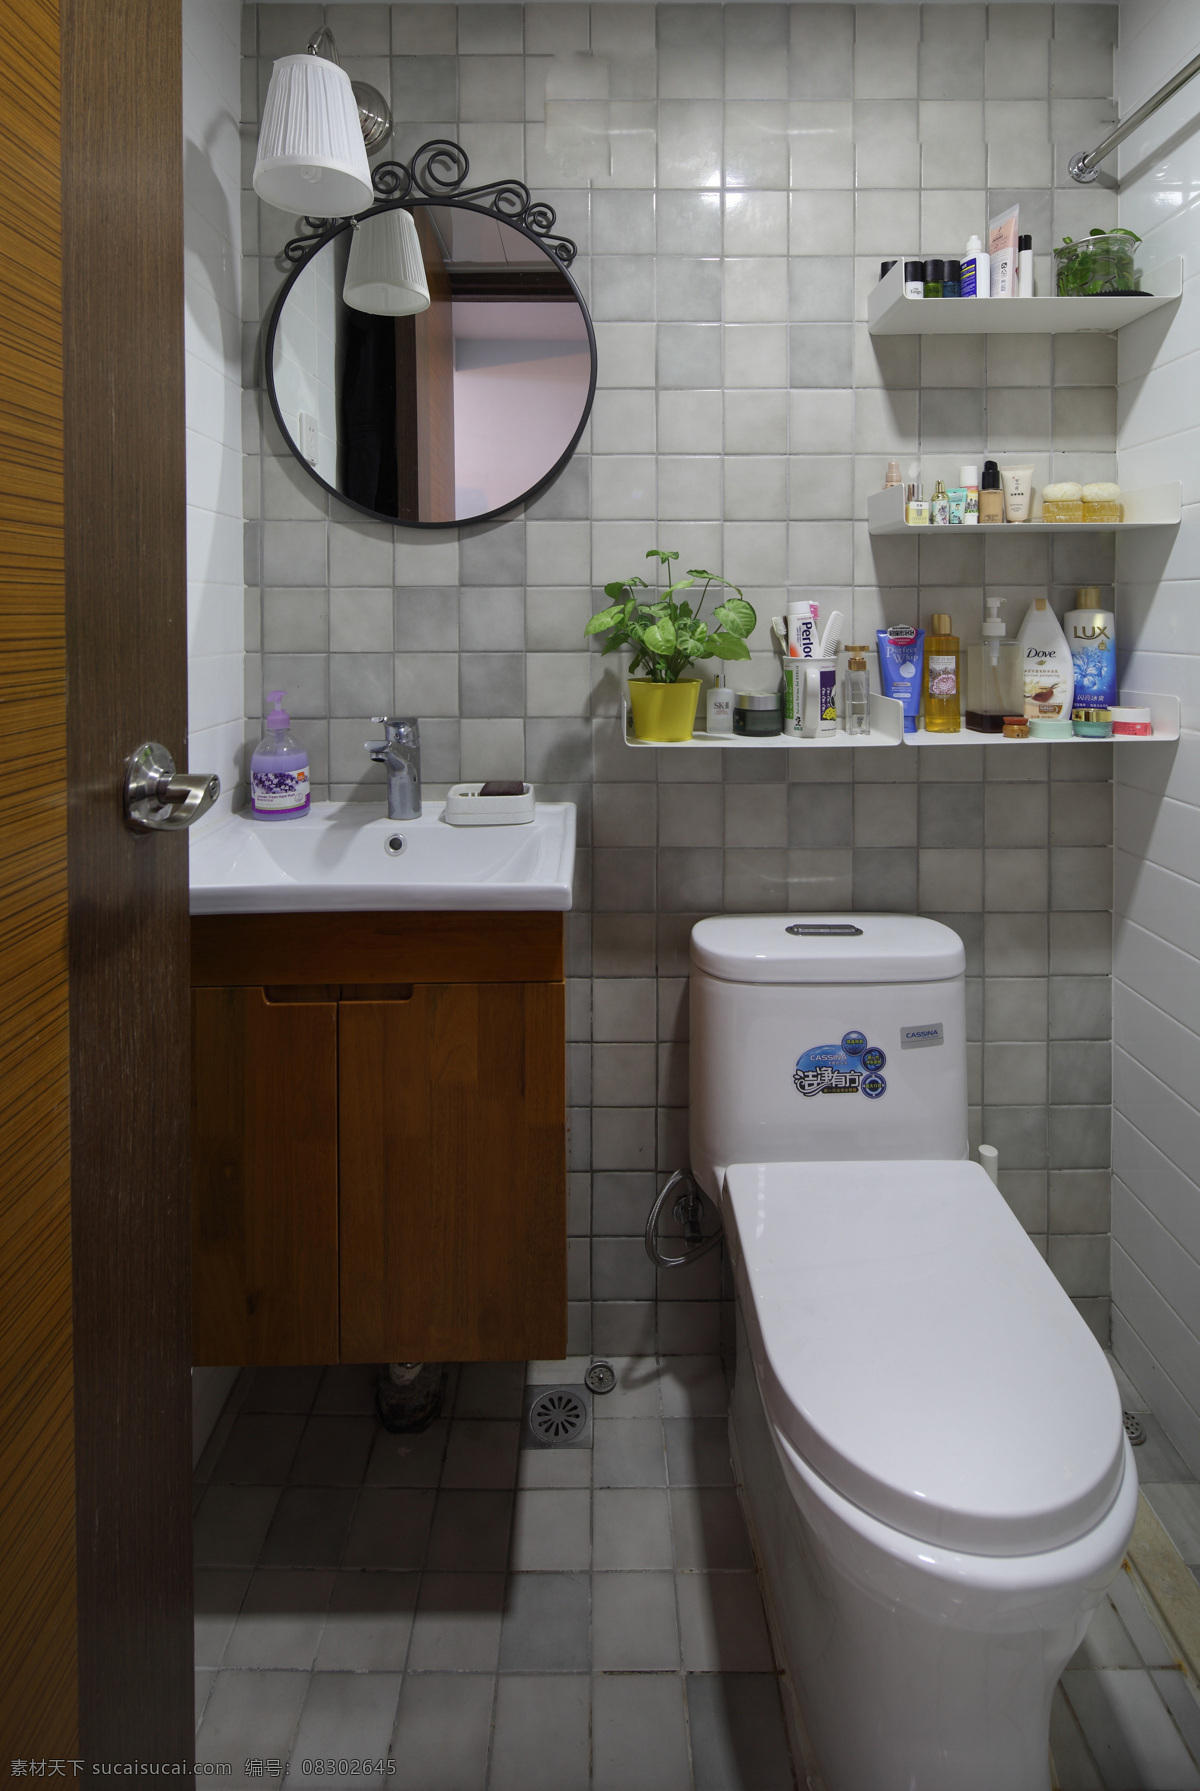 现代 时尚 浴室 白色 壁灯 室内装修 效果图 浴室装修 格子地板 木制洗手台 木制门